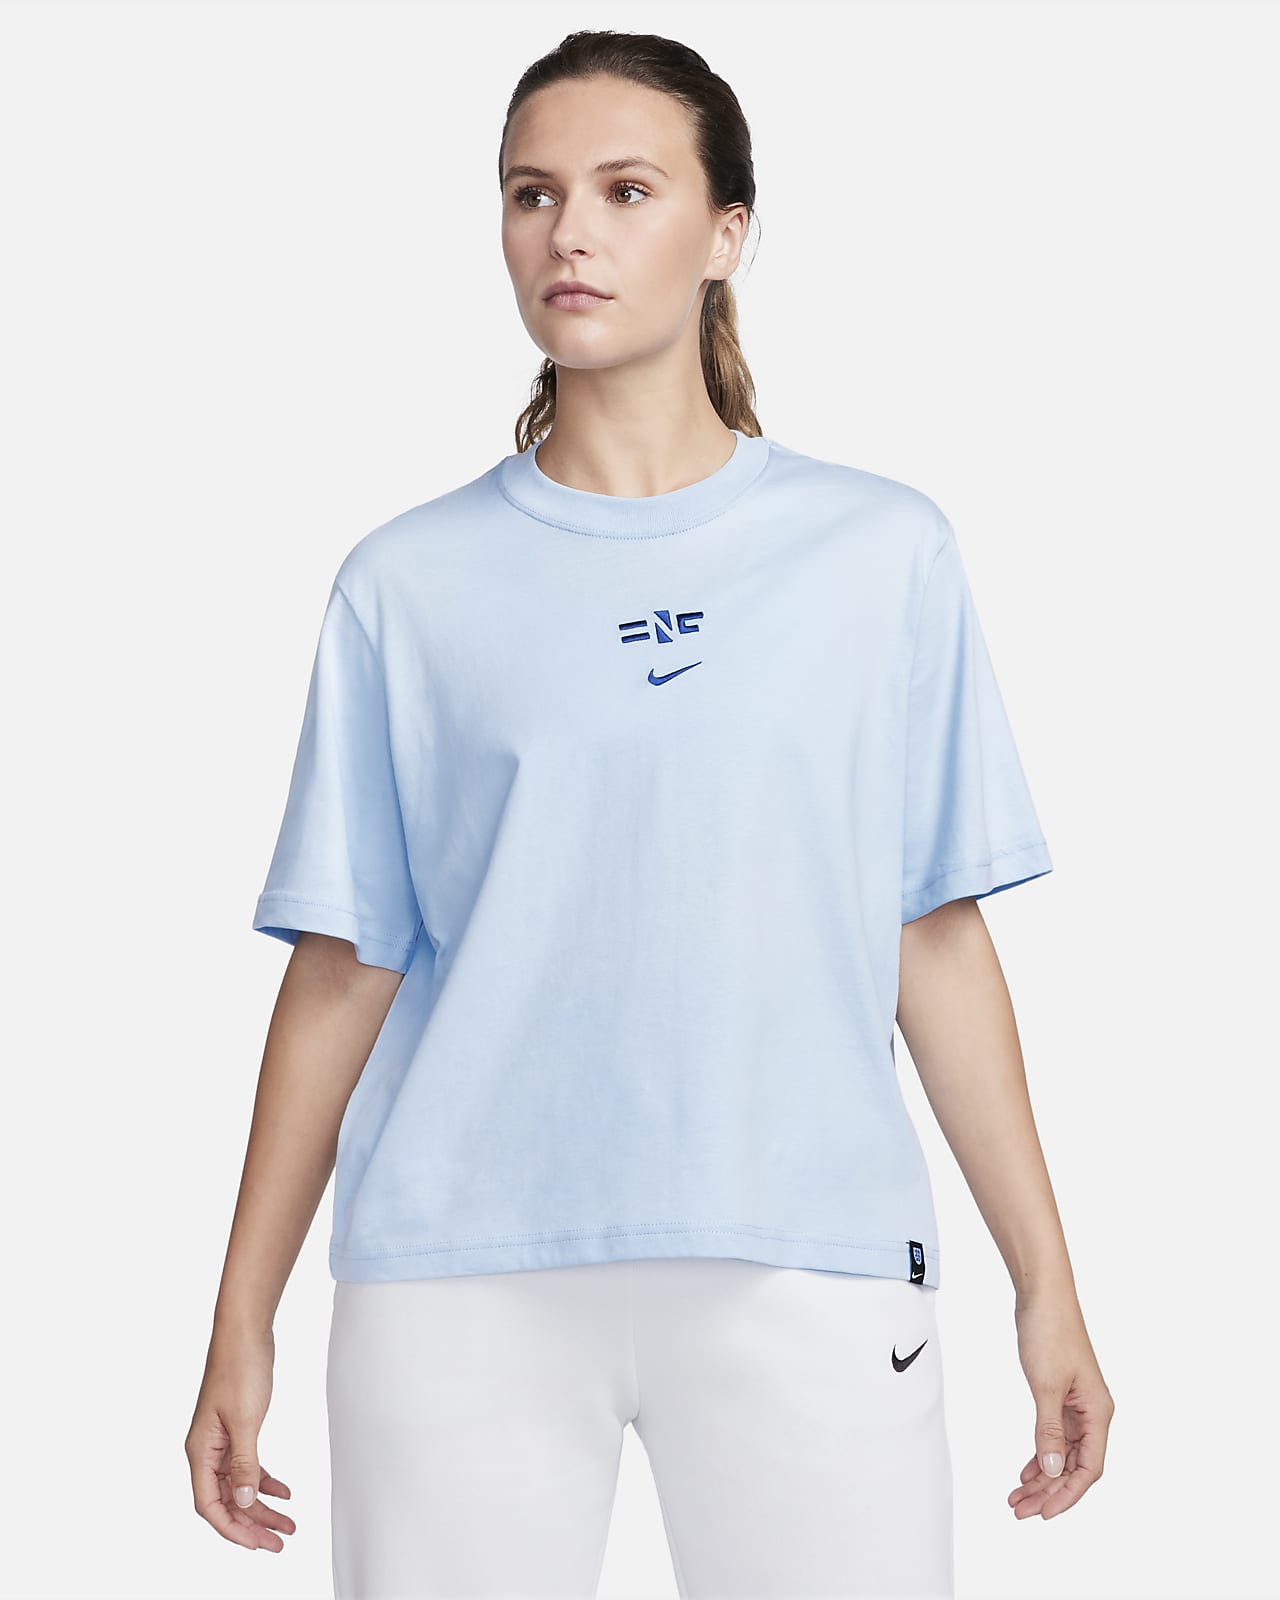 Panda Moeras Verhogen England Women's T-Shirt. Nike.com